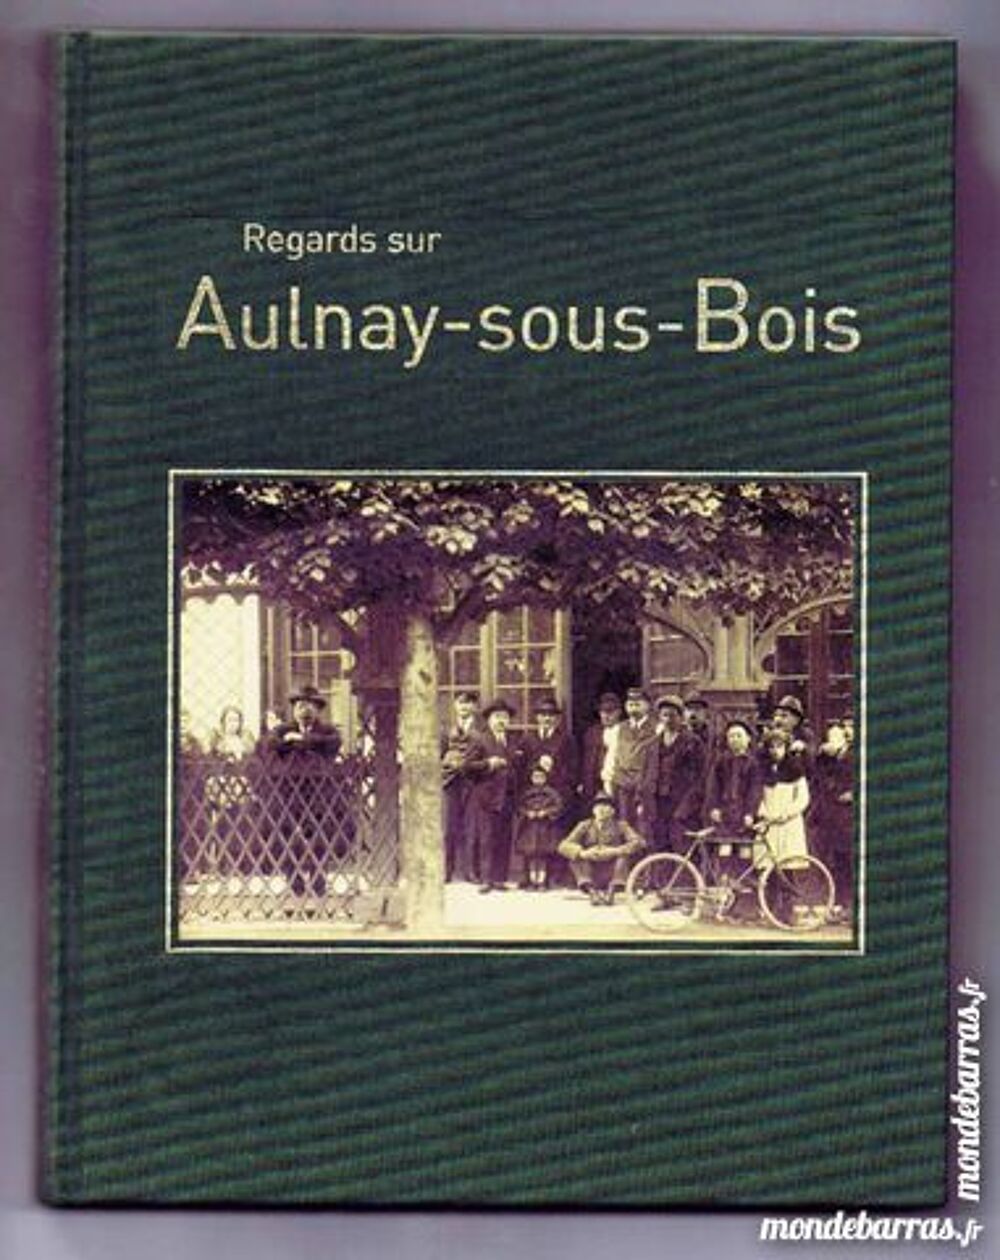 AULNAY-SOUS-BOIS: Livre avec reproductions de CPA Livres et BD